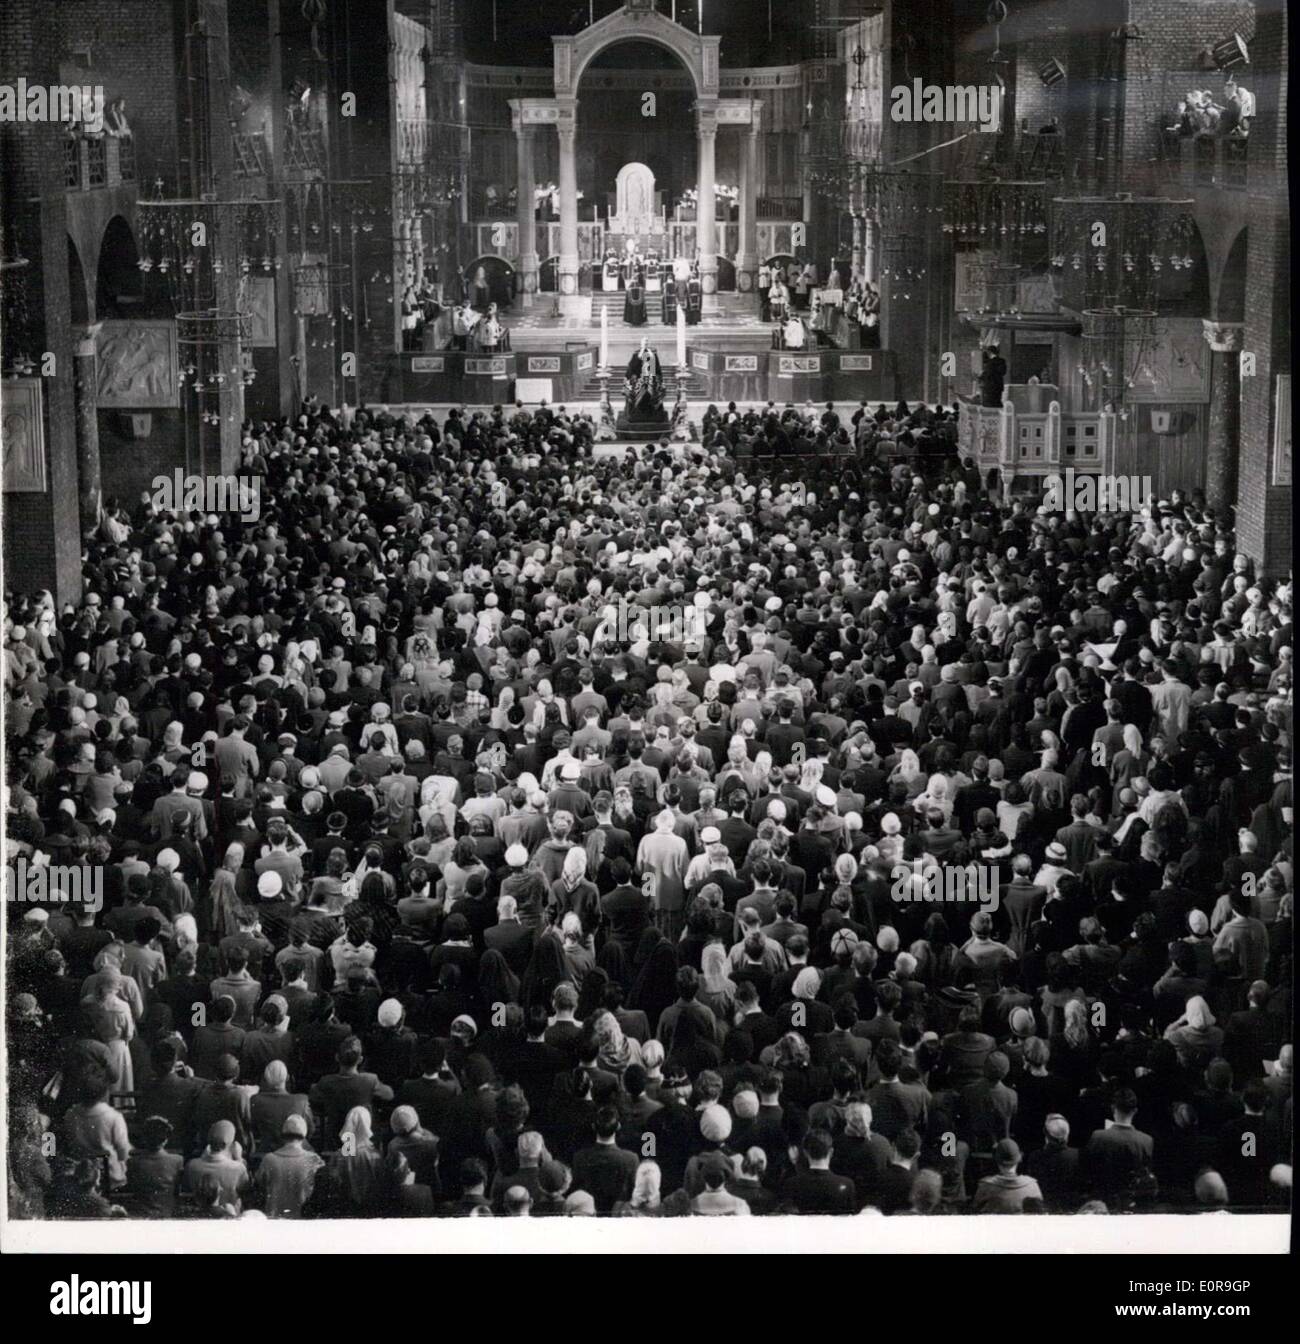 11 octobre 1958 - Messe de requiem à la Cathédrale de Westminster : Messe de Requiem a eu lieu ce matin dans la Cathédrale de Westminster par le Dr Godfrey l'archevêque de Westminster à la mémoire du Pape. La photo montre la vue générale pendant la messe de requiem à la Cathédrale de Westminster ce matin. Banque D'Images